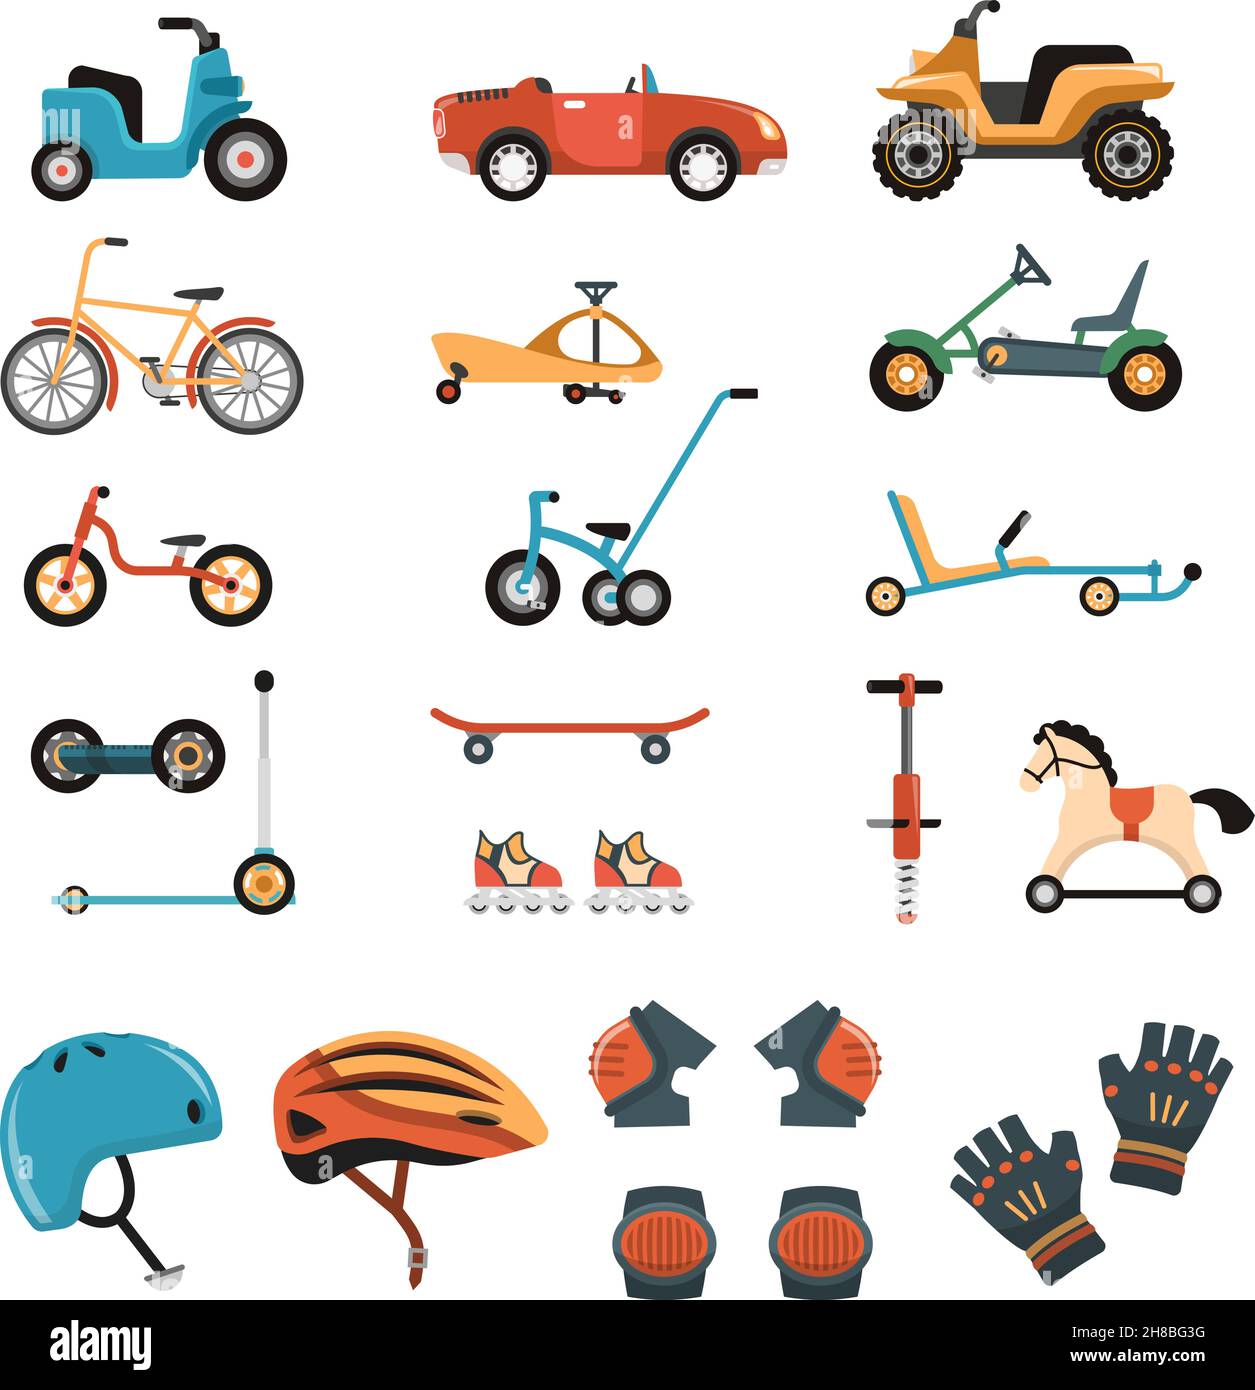 Kindersicherheit Körperschutz Sportausrüstung Schutz isolierte Bilder Set Mit Spielwagen Fahrräder Kniescheiben und Helme Vektor-Illustration Stock Vektor